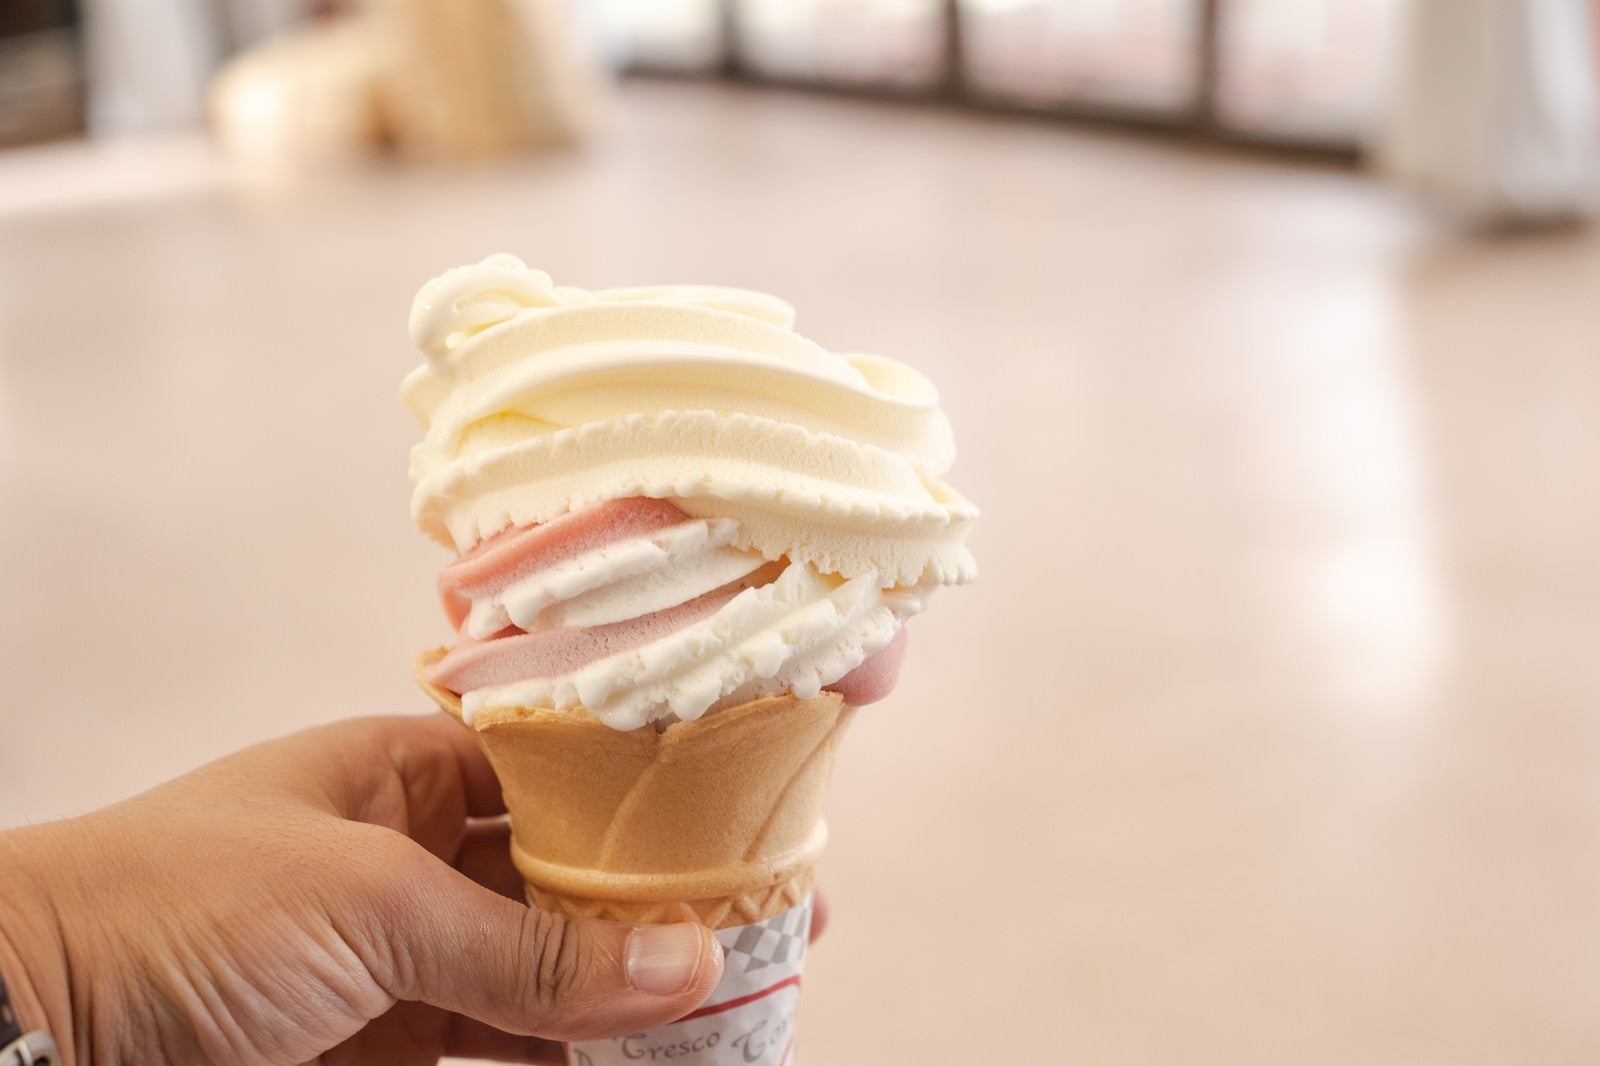 「武石観光センターで購入したソフトクリーム」の写真